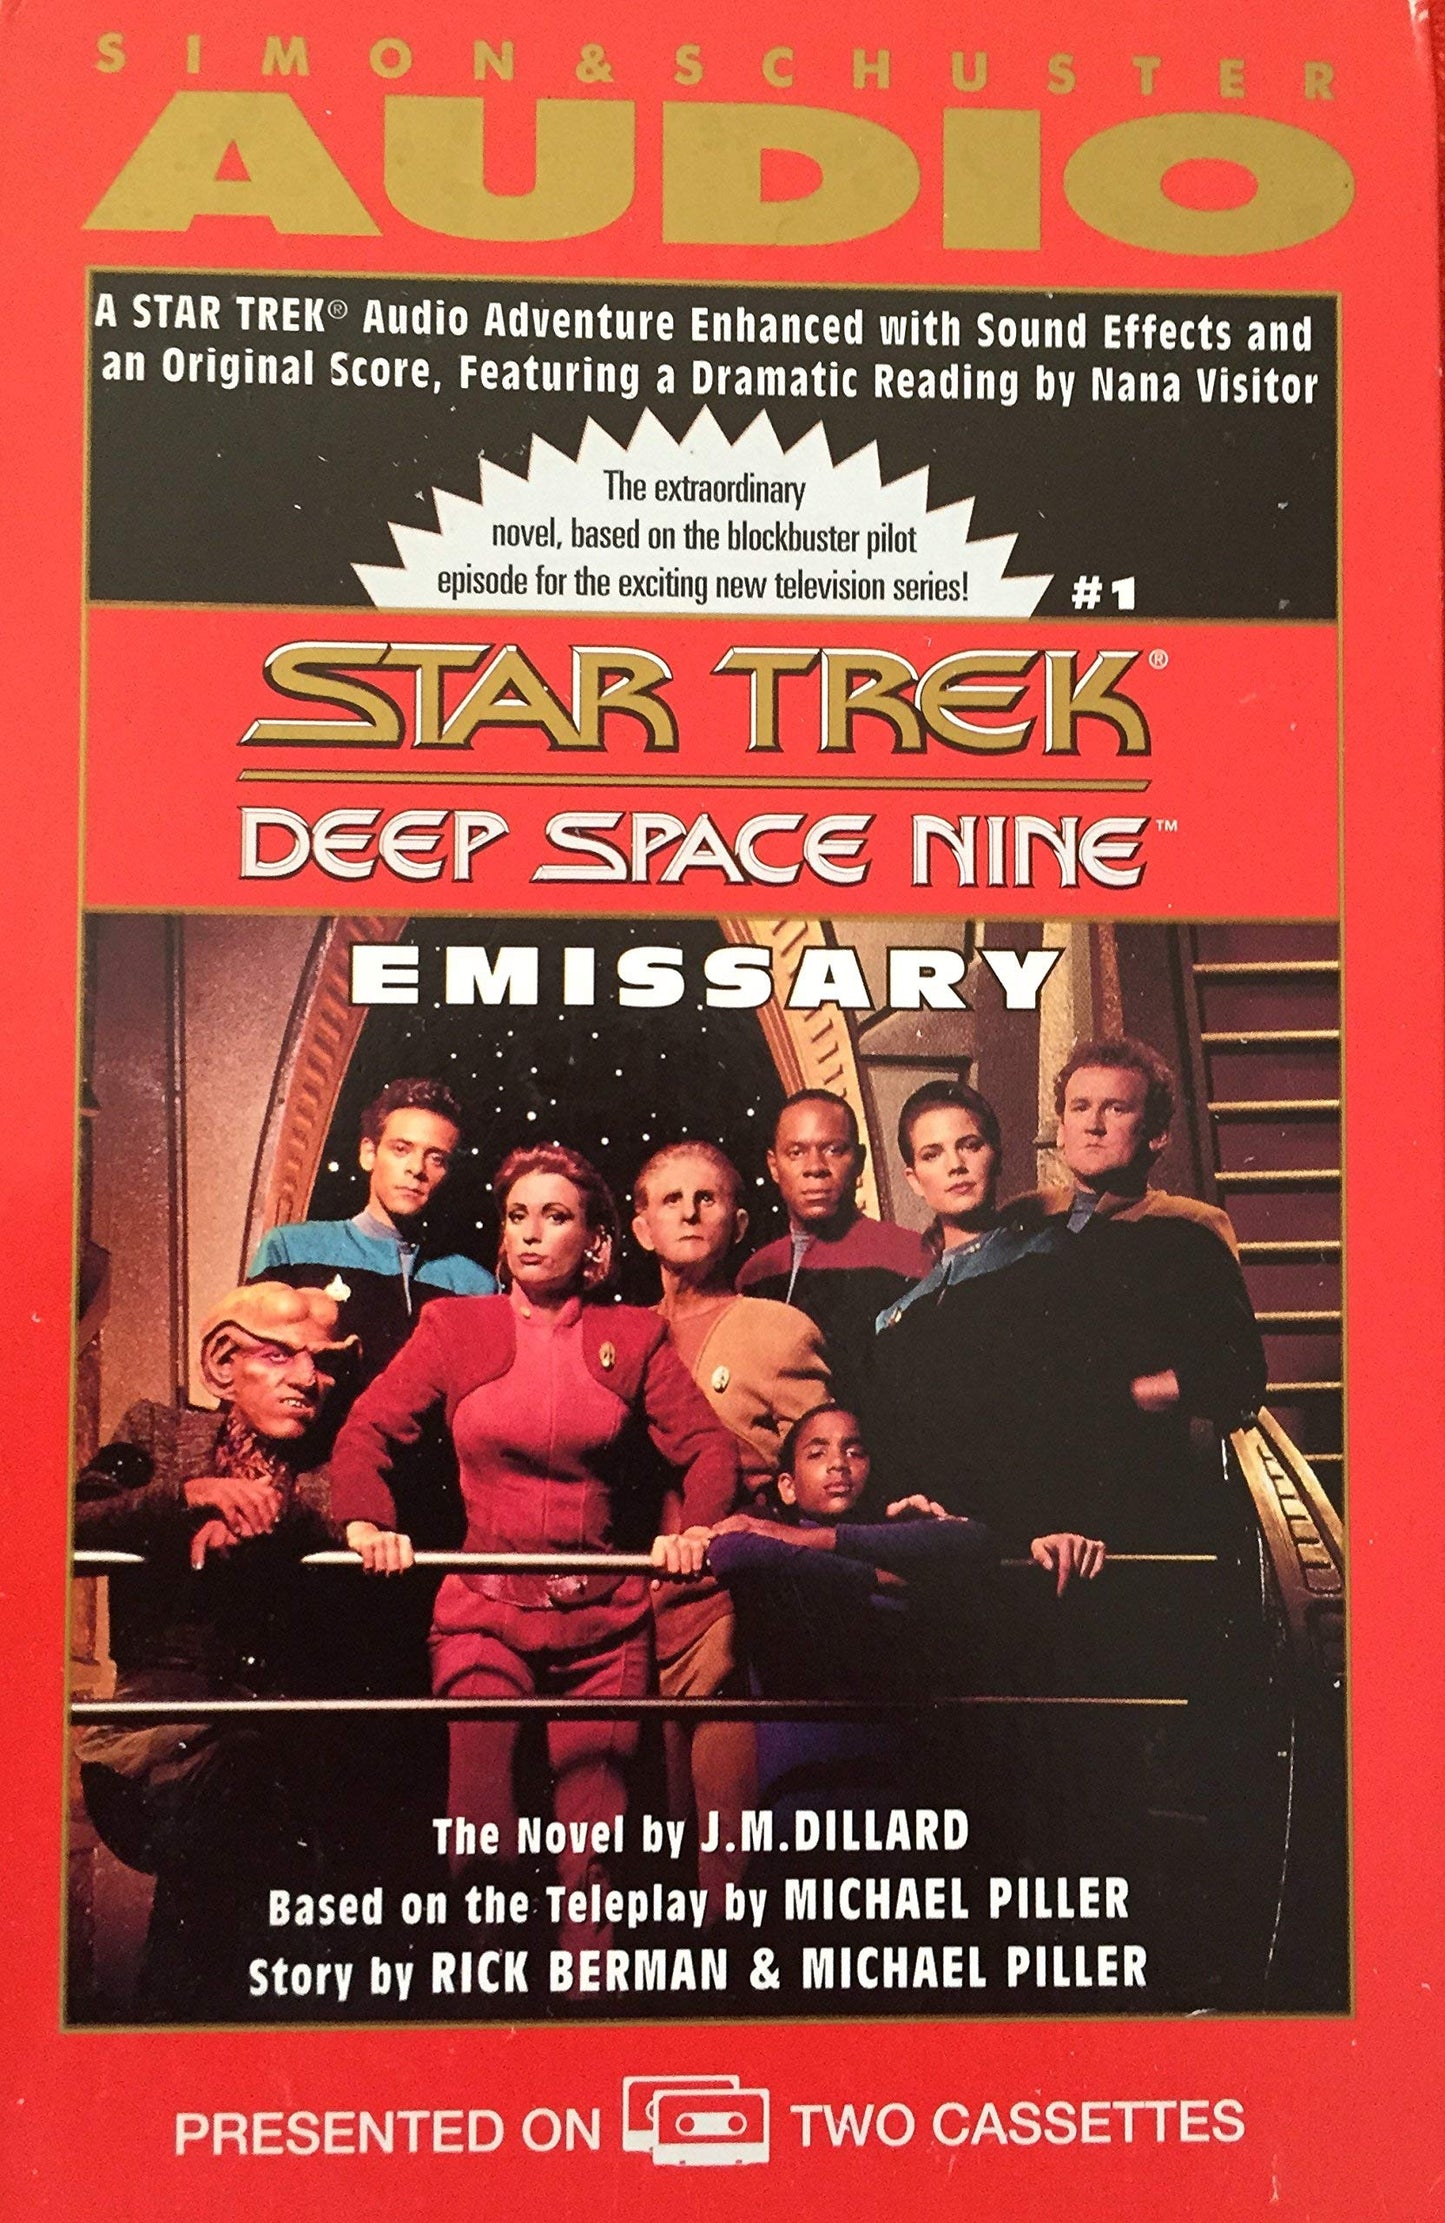 Title: Emissary Star Trek Deep Space Nine